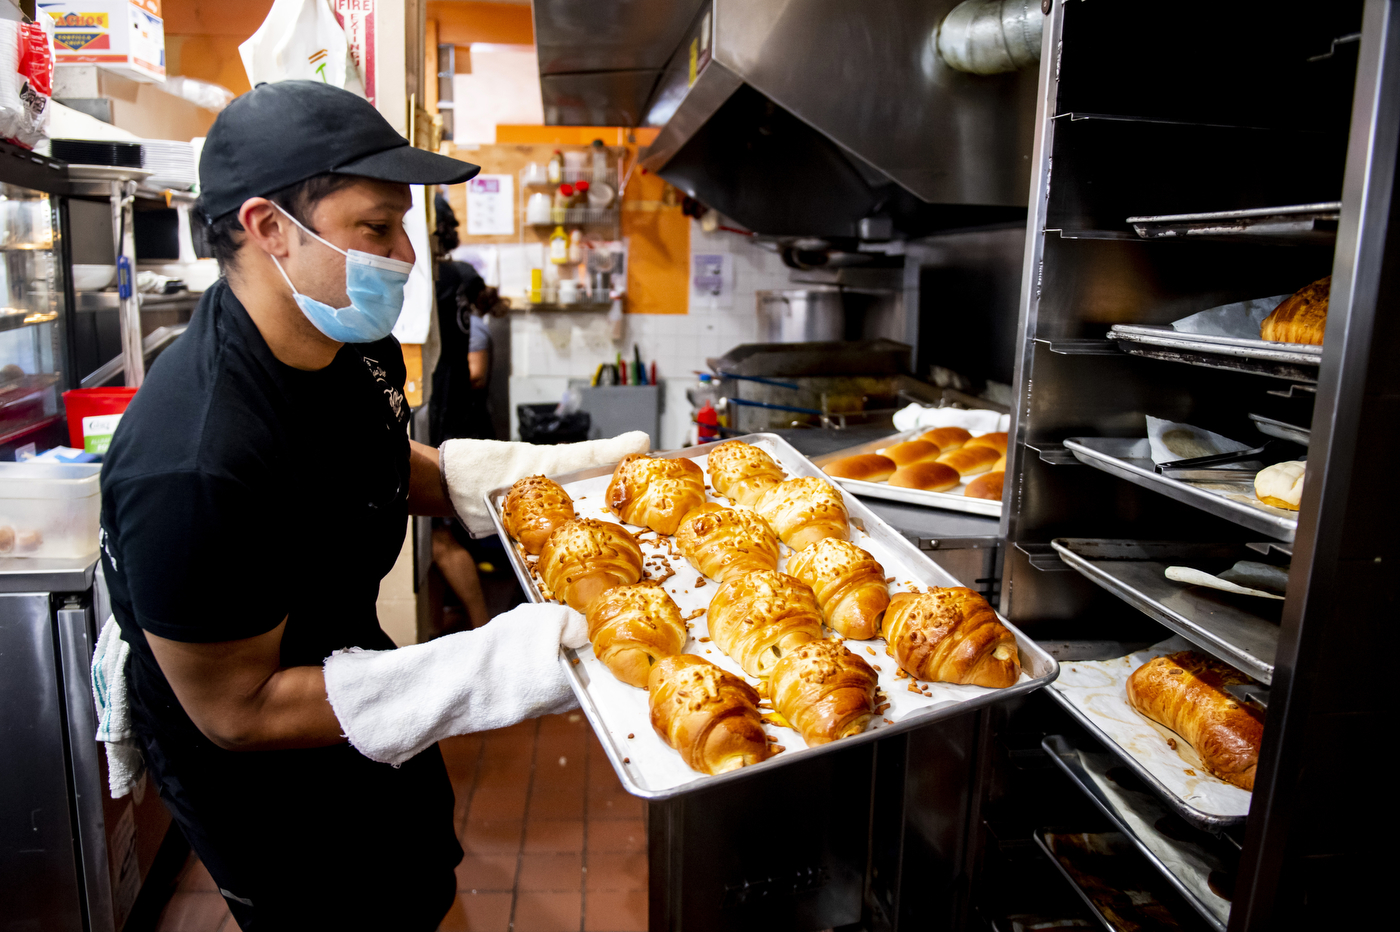 Fernando Rosas pulls freshly-baked bread from the oven.